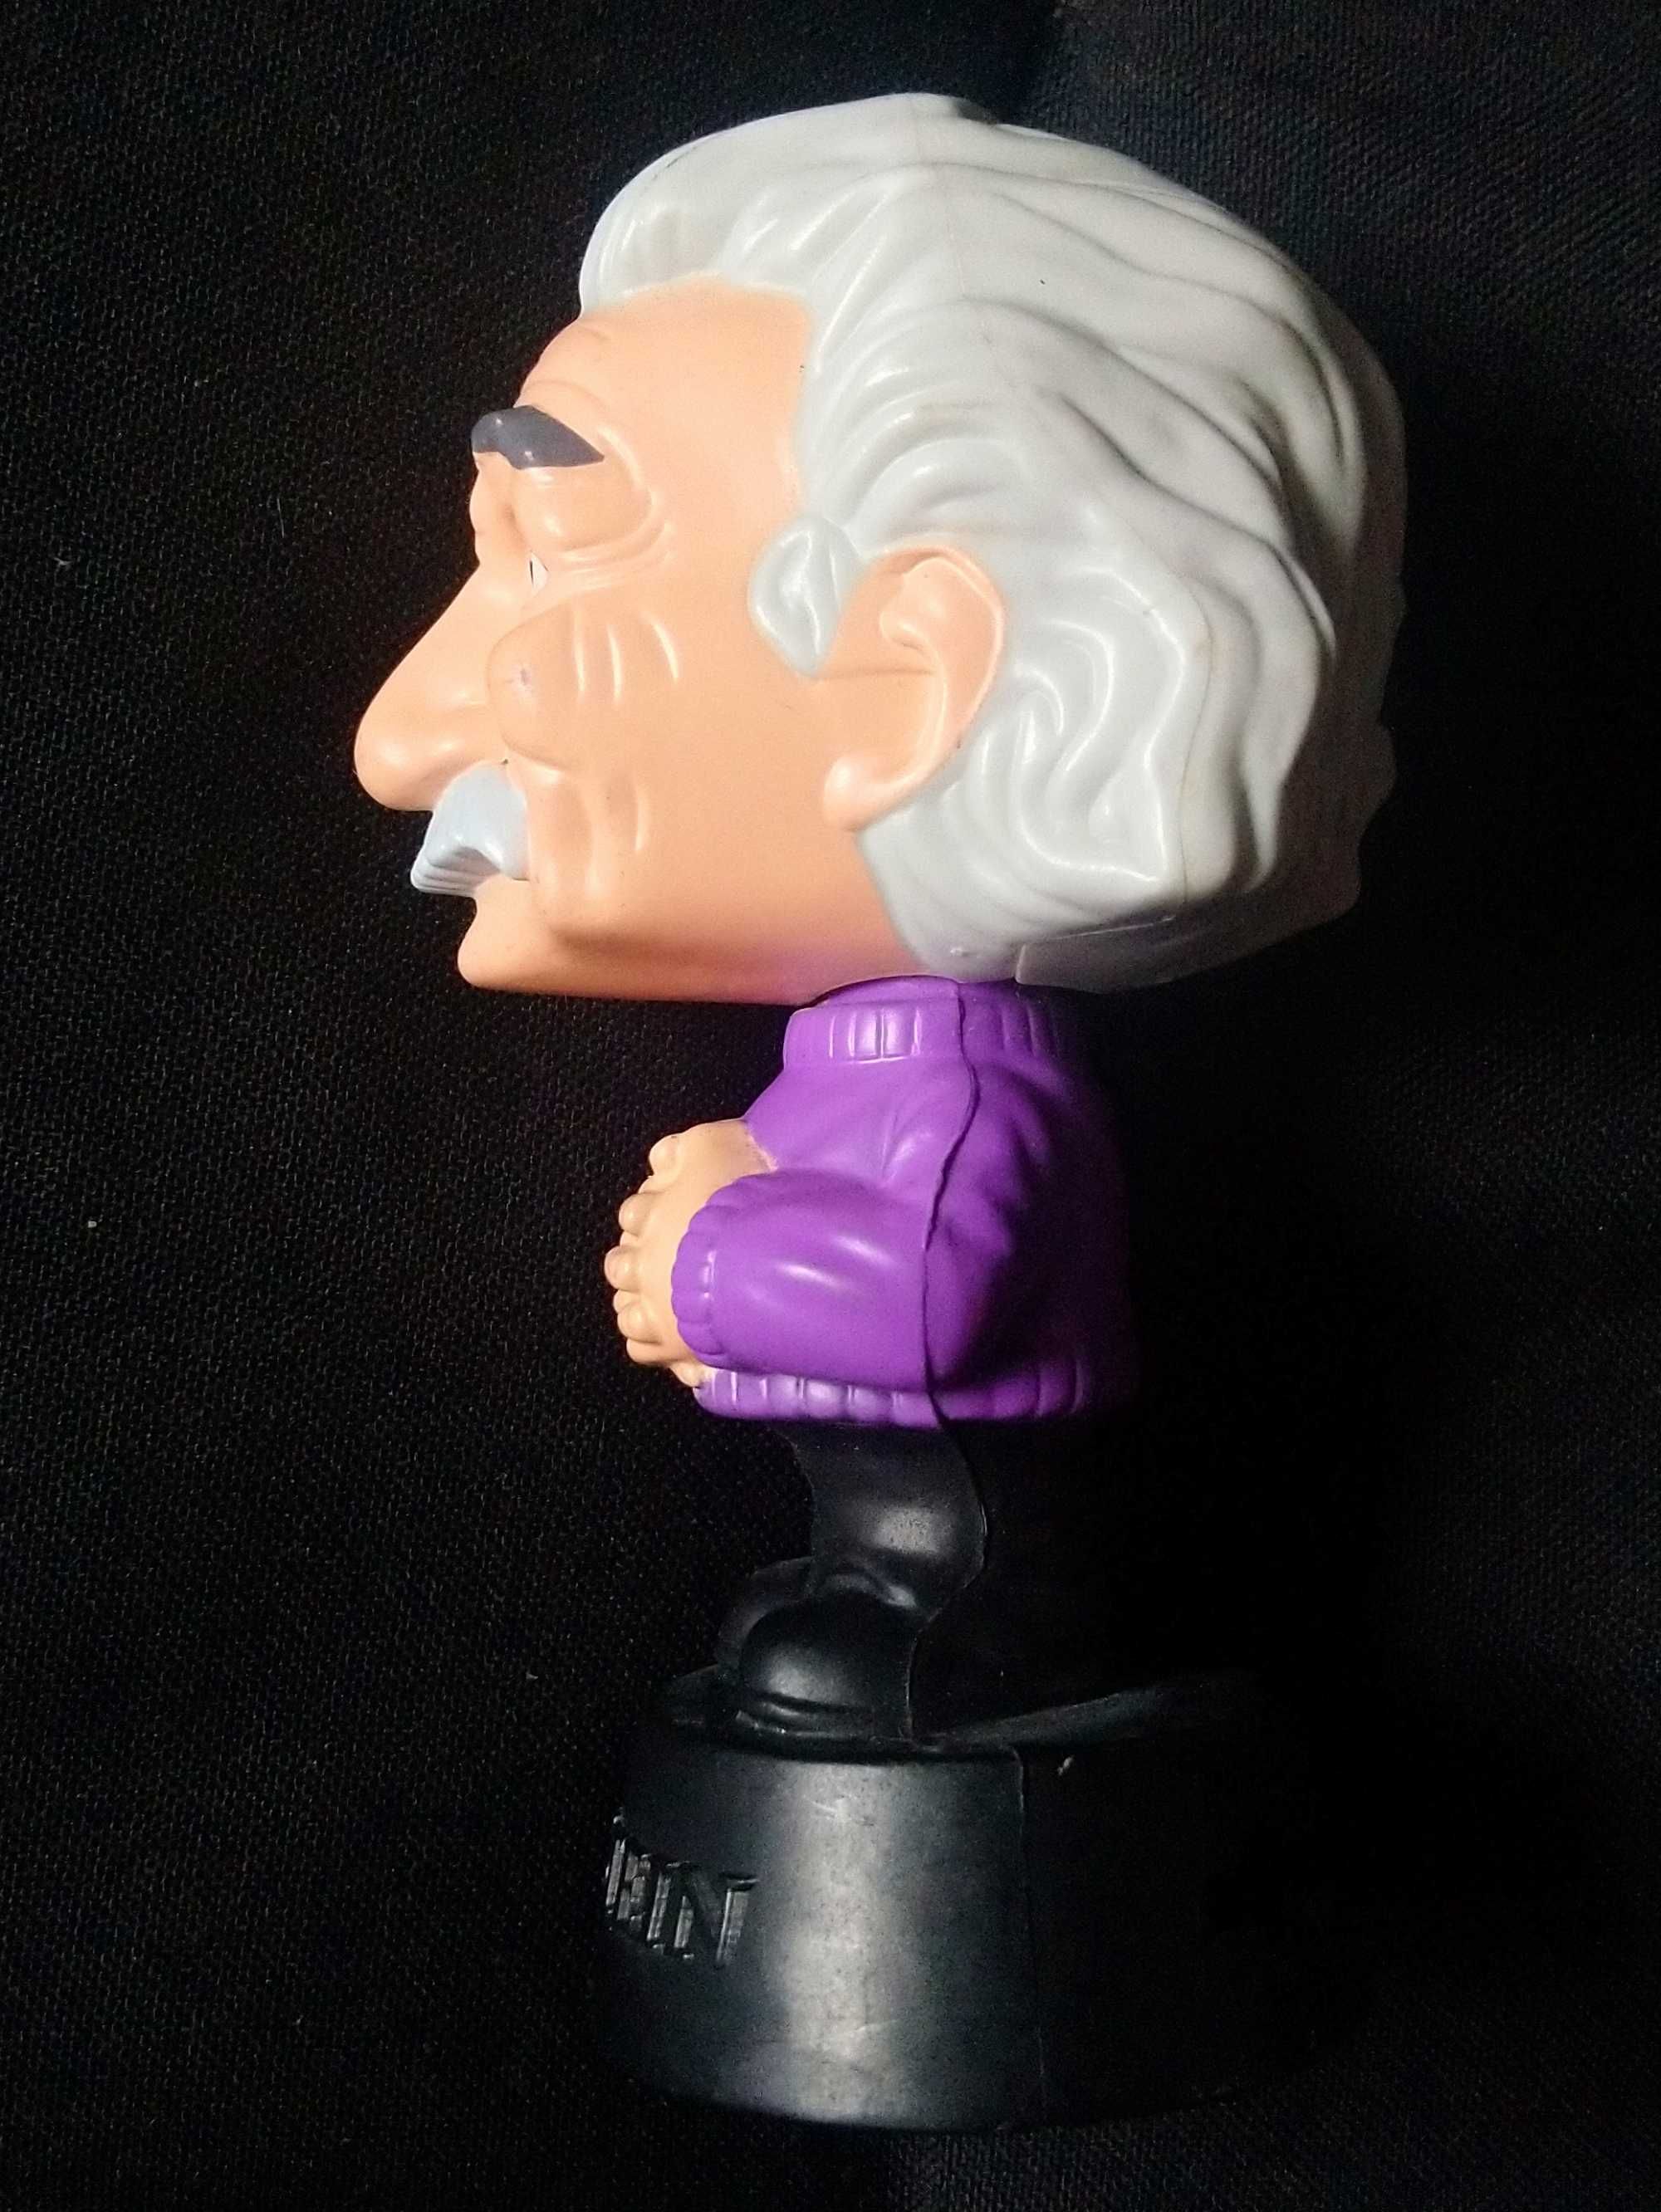 Статуэтка Альберт Эйнштейн 9,5 см высо а пластик .